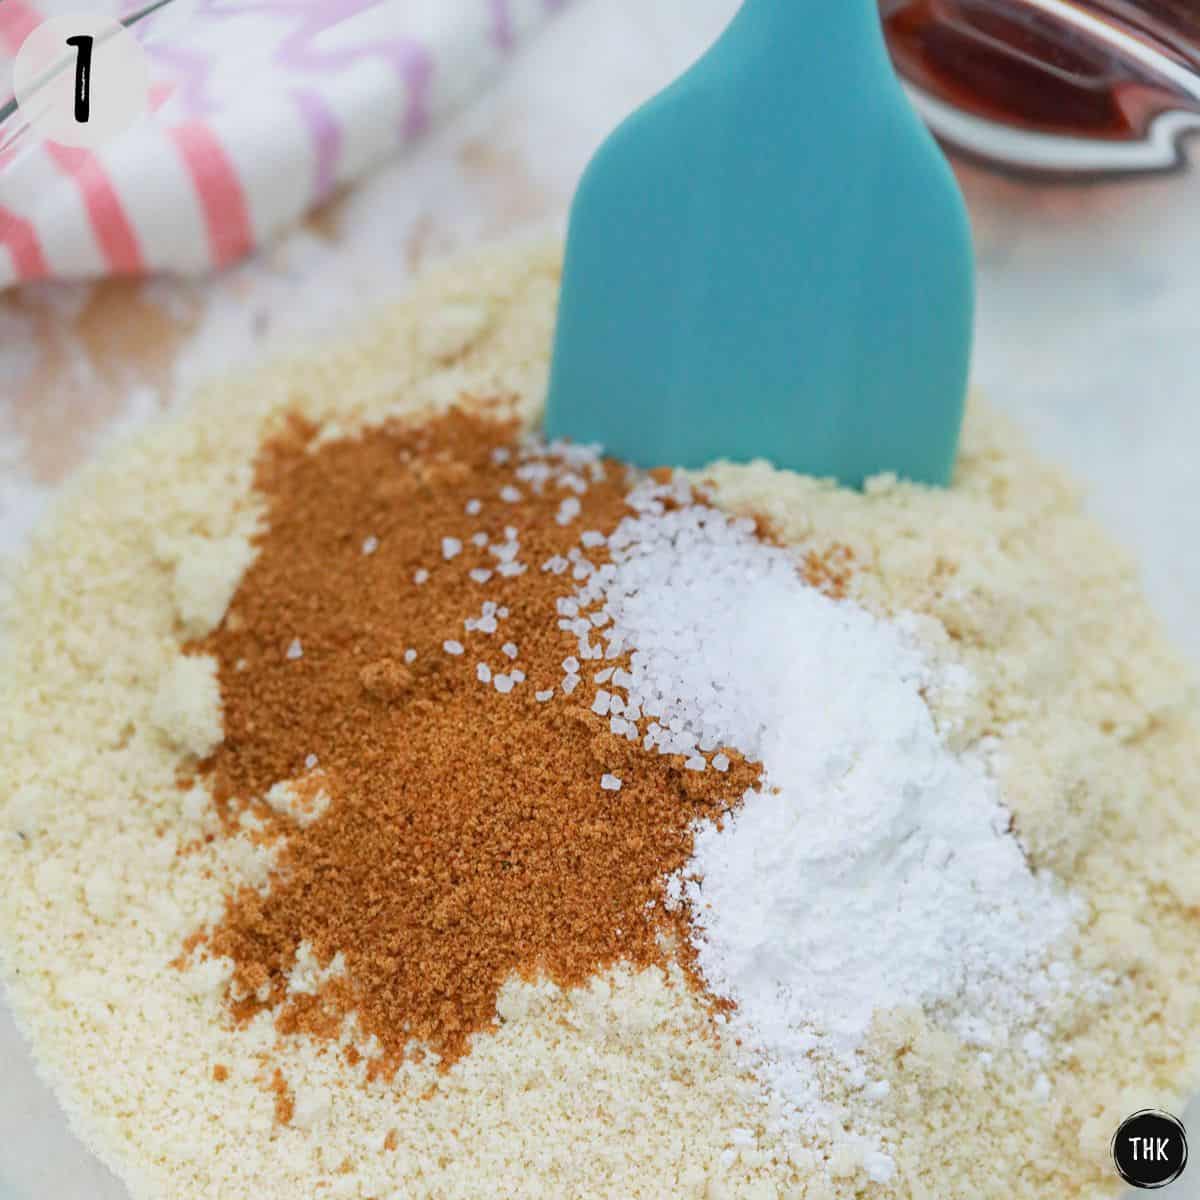 Flour, sugar, baking powder and salt in mixing bowl.